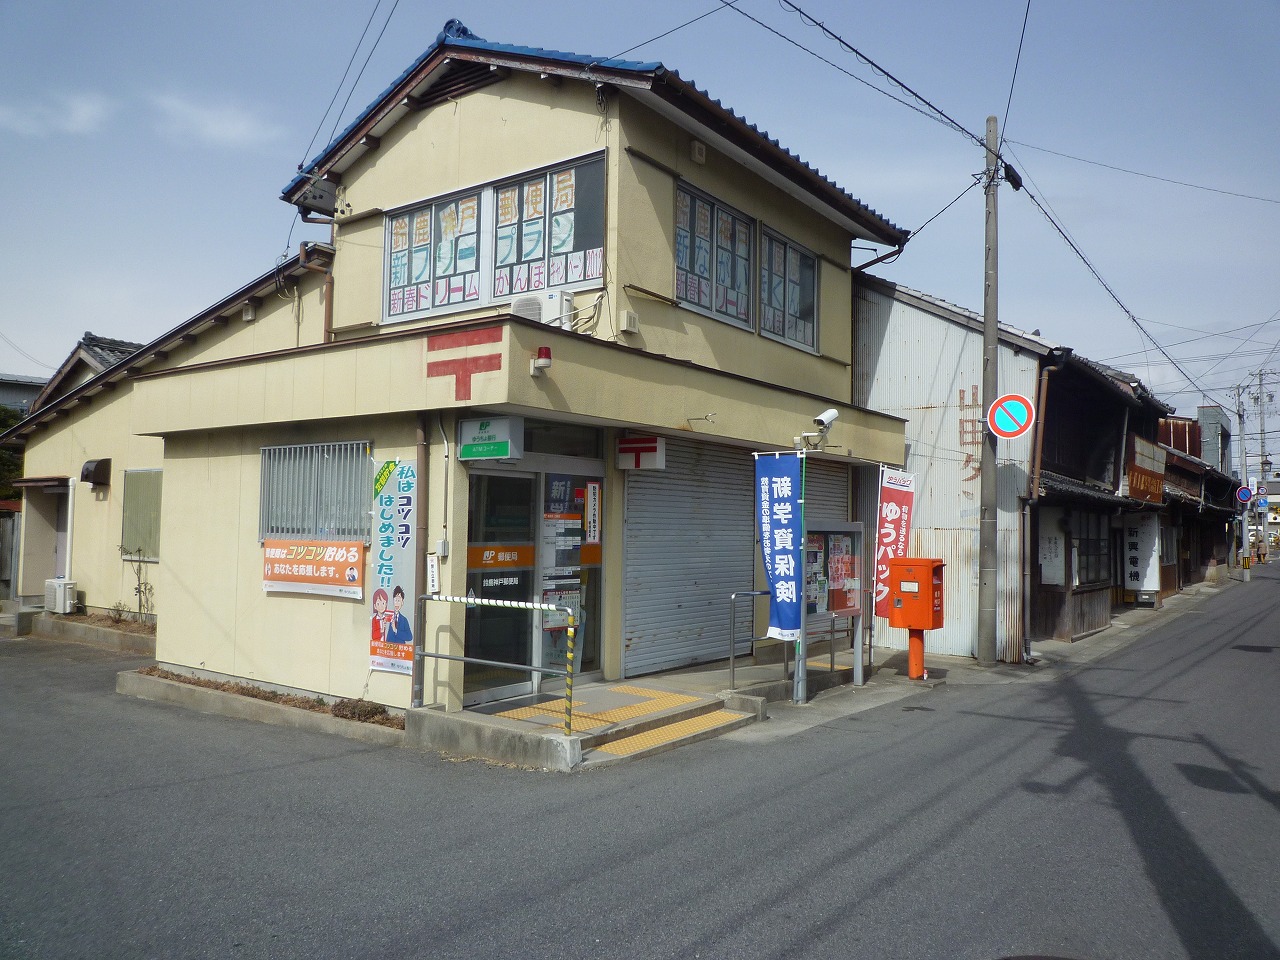 post office. 2356m to Suzuka Kobe post office (post office)